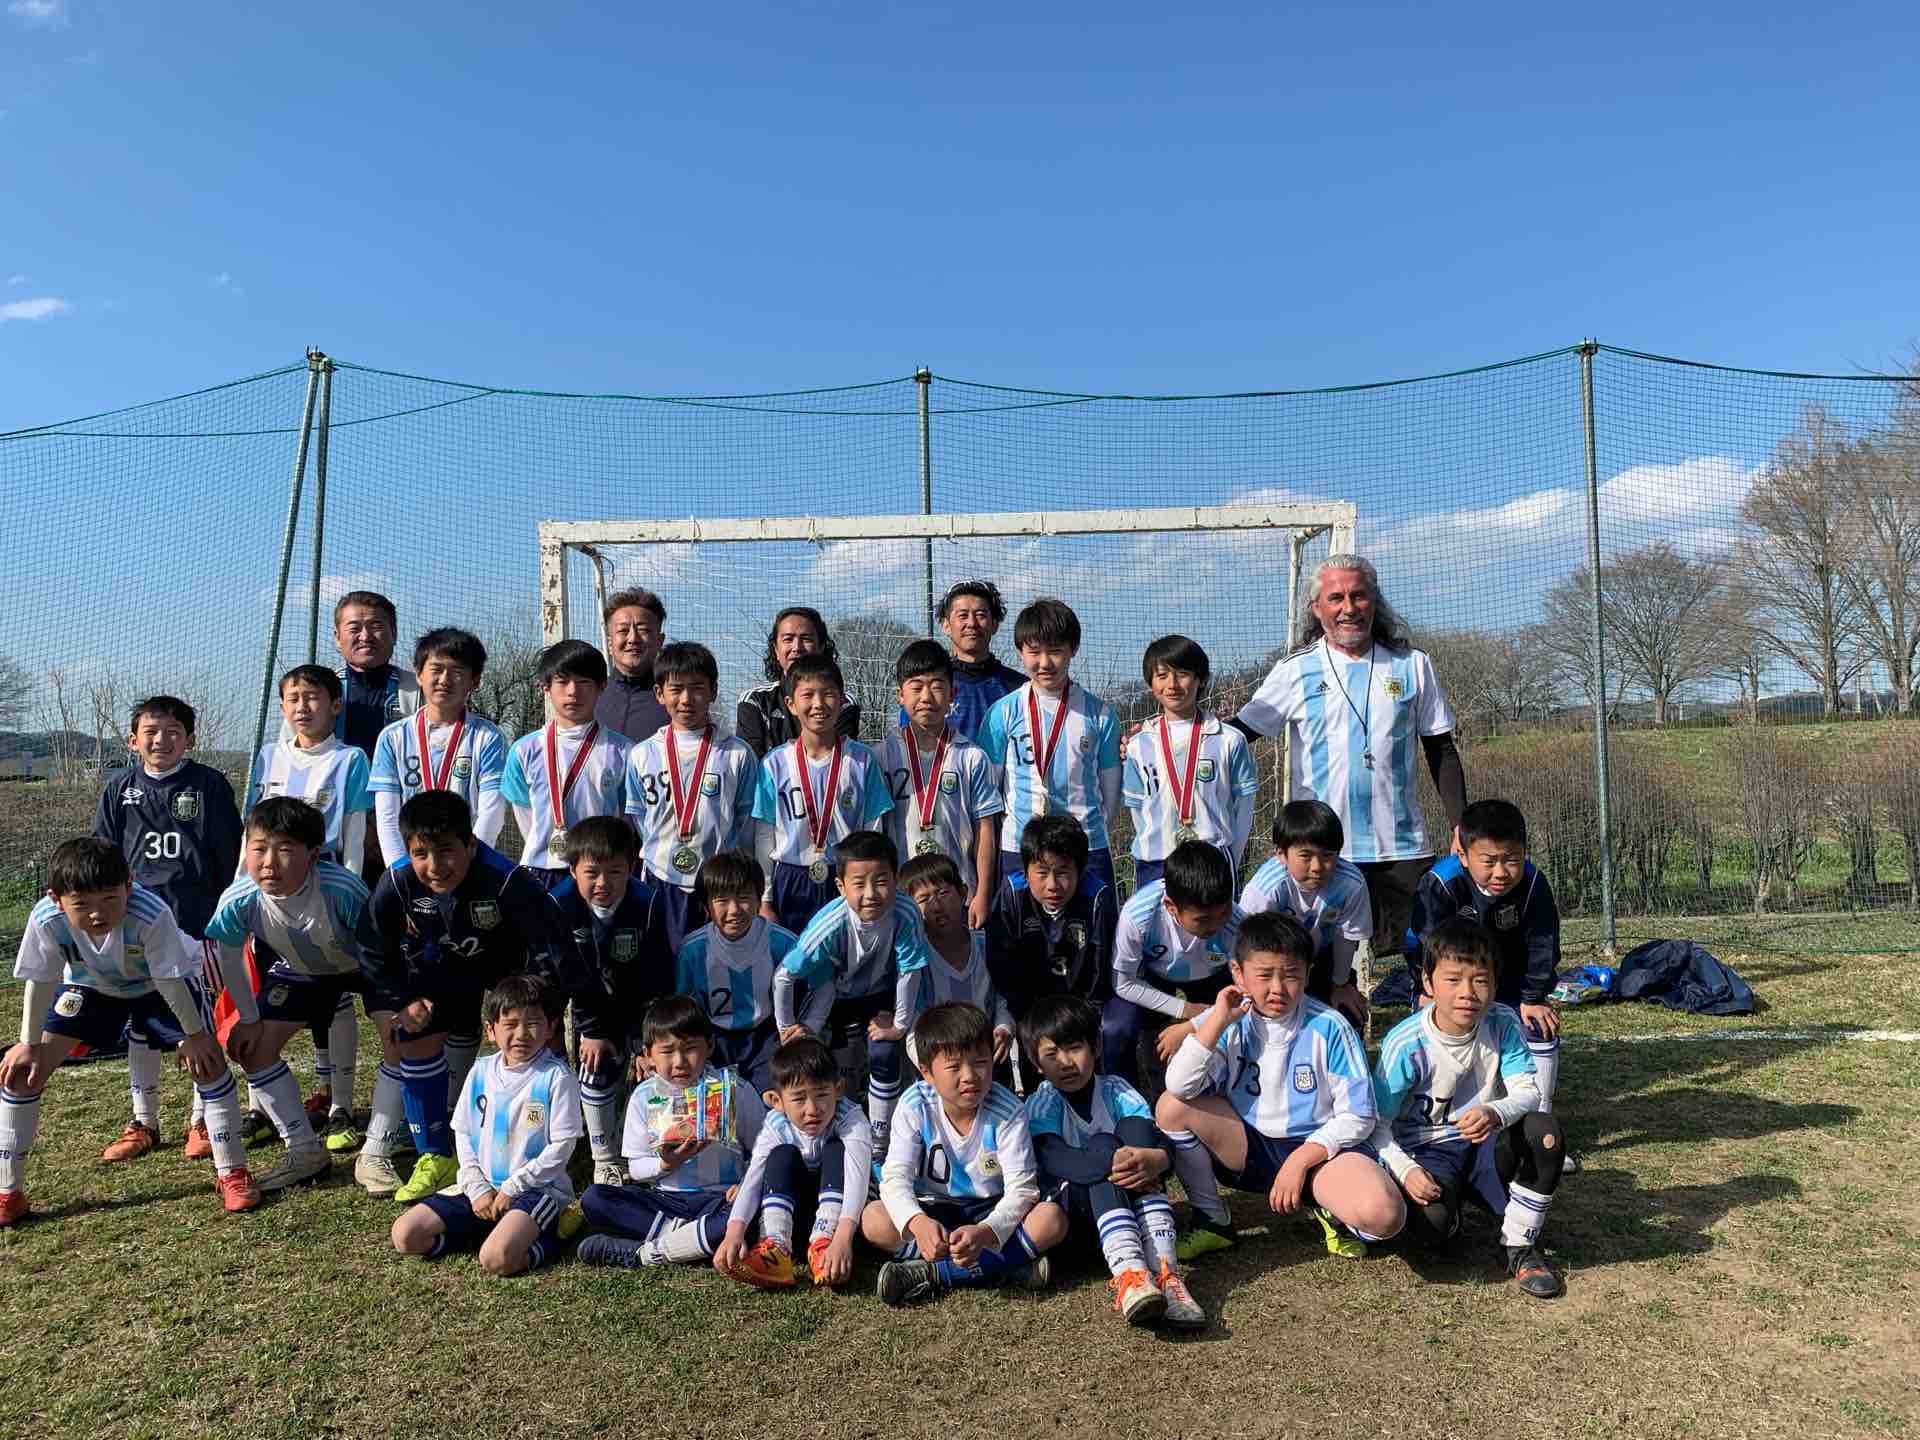 ４ 月２８日 日 エスペランサ デ ファンタジスタ の少年サッカー大会ヲカイサイイタシマス 予定オクリマス アルゼンチンfcのブログ